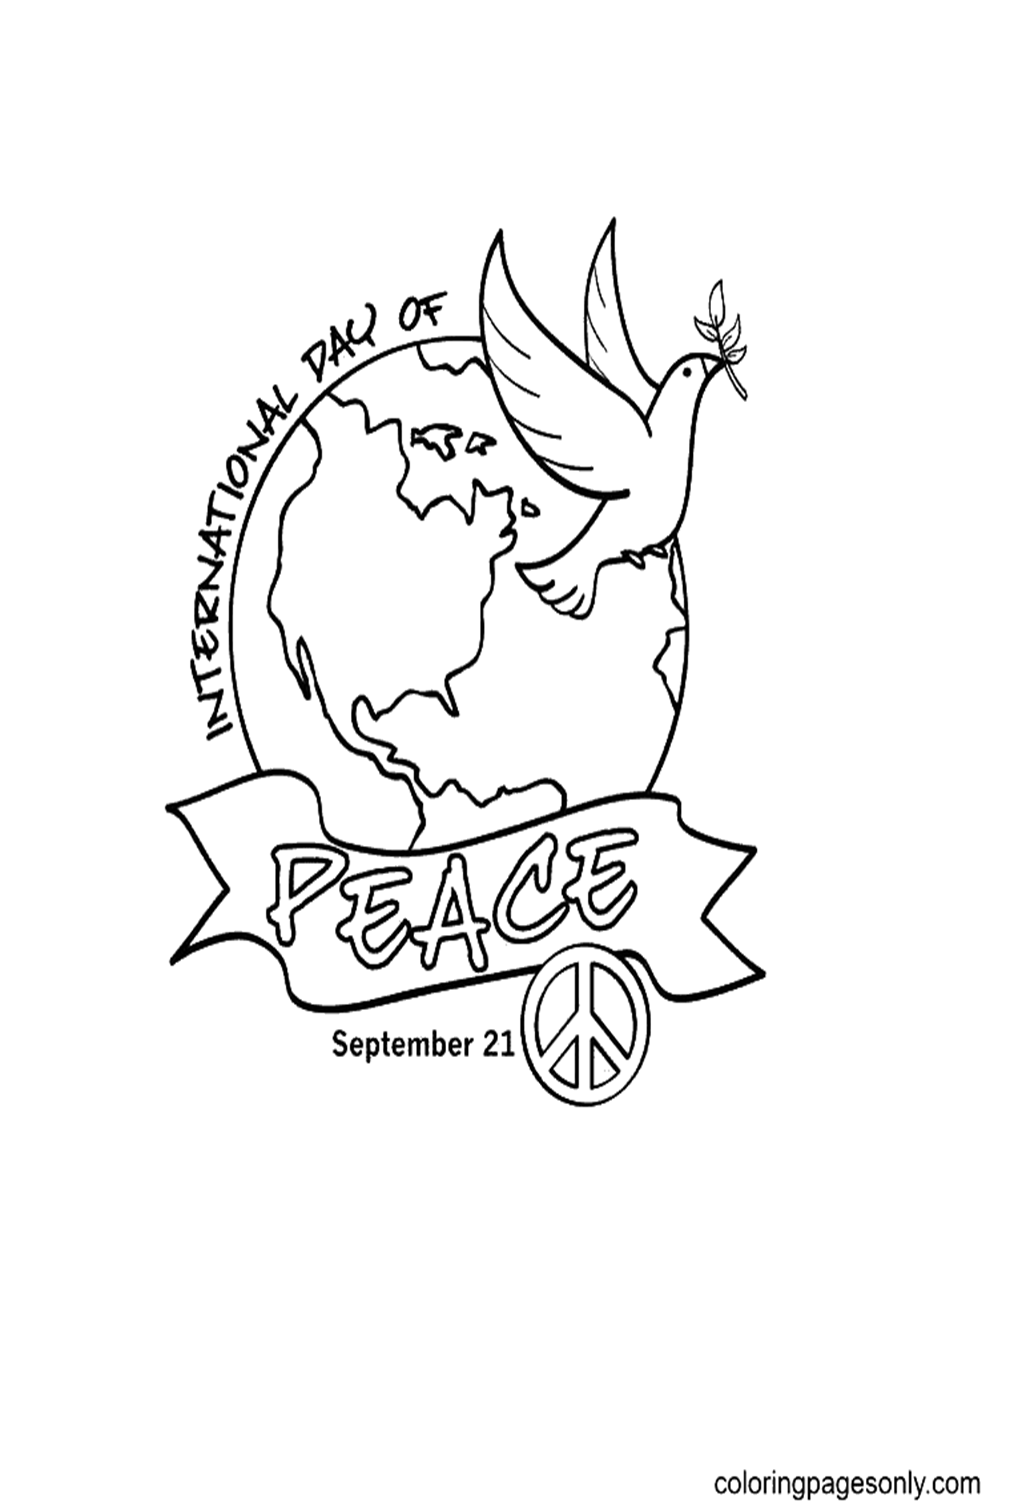 Internationaler Friedenstag vom Internationalen Tag des Friedens